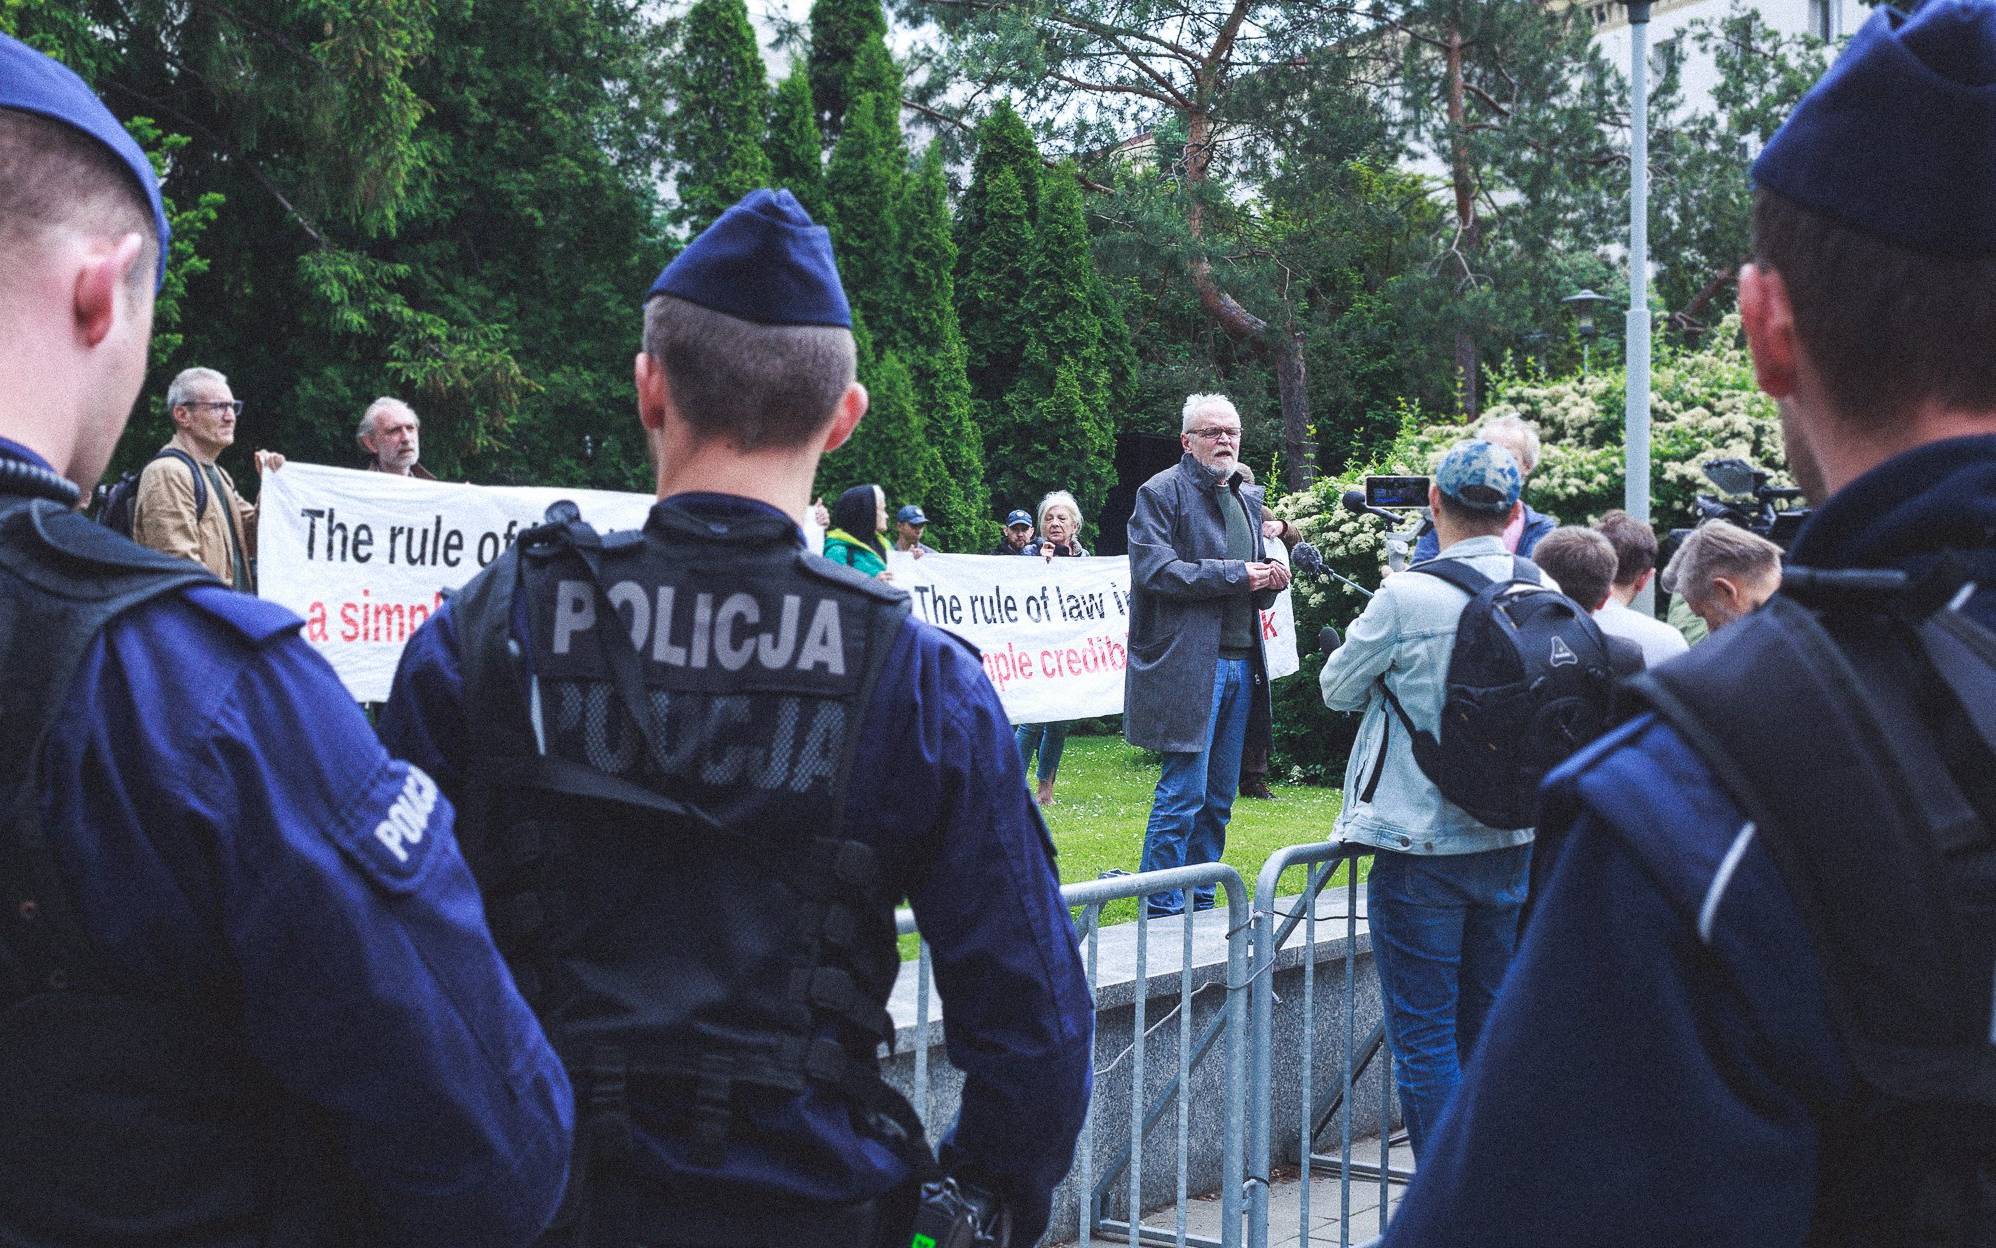 Obywatele RP protestują pod Sejmem: patrzymy na ręce rządowi i UE w sprawie praworządności i KPO